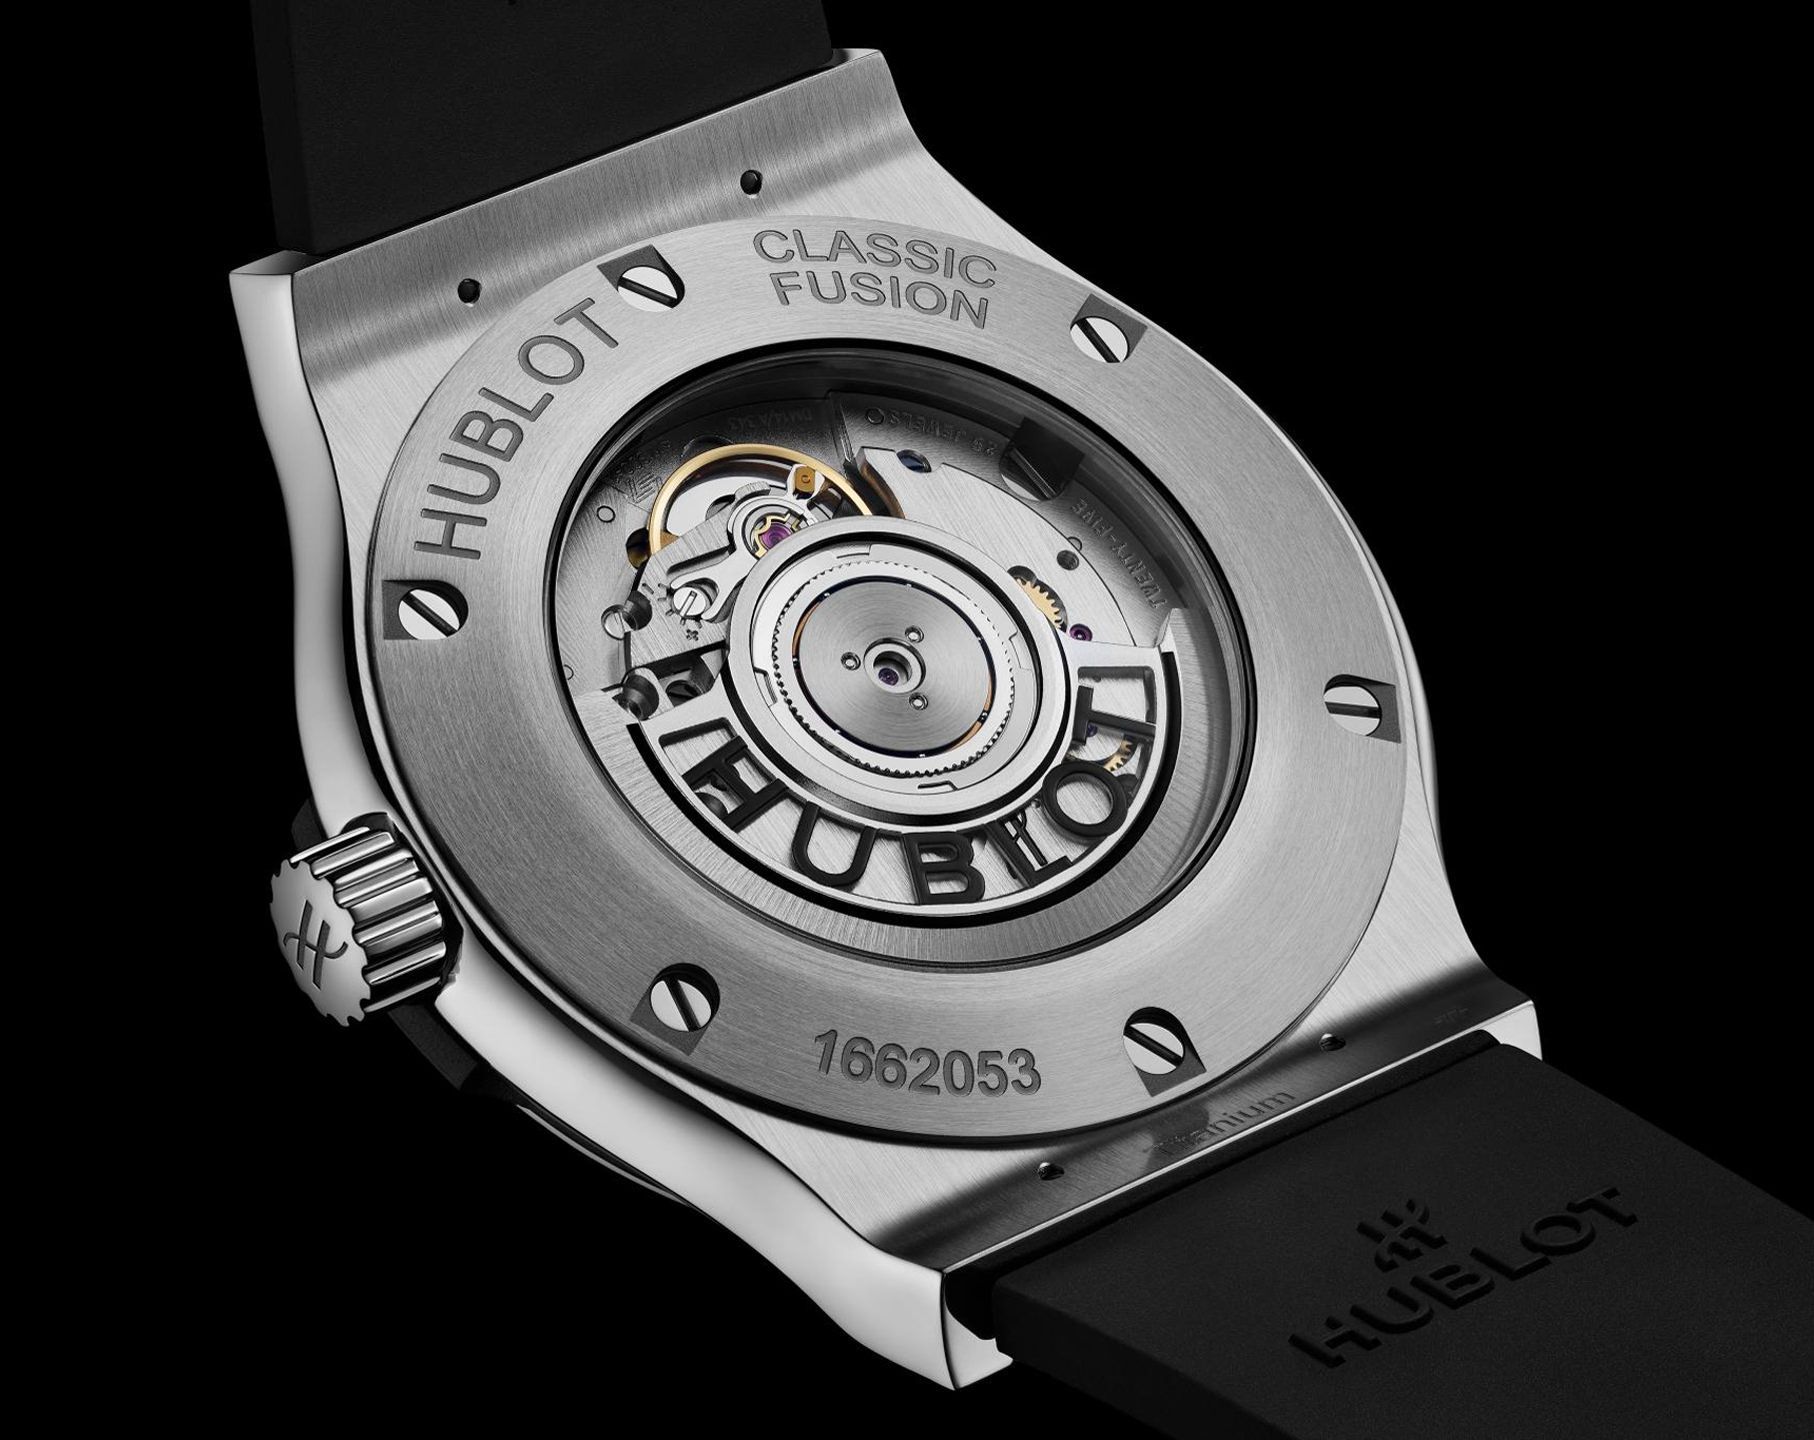 Hublot Classic Fusion Power Reserve Titanium Watch Review